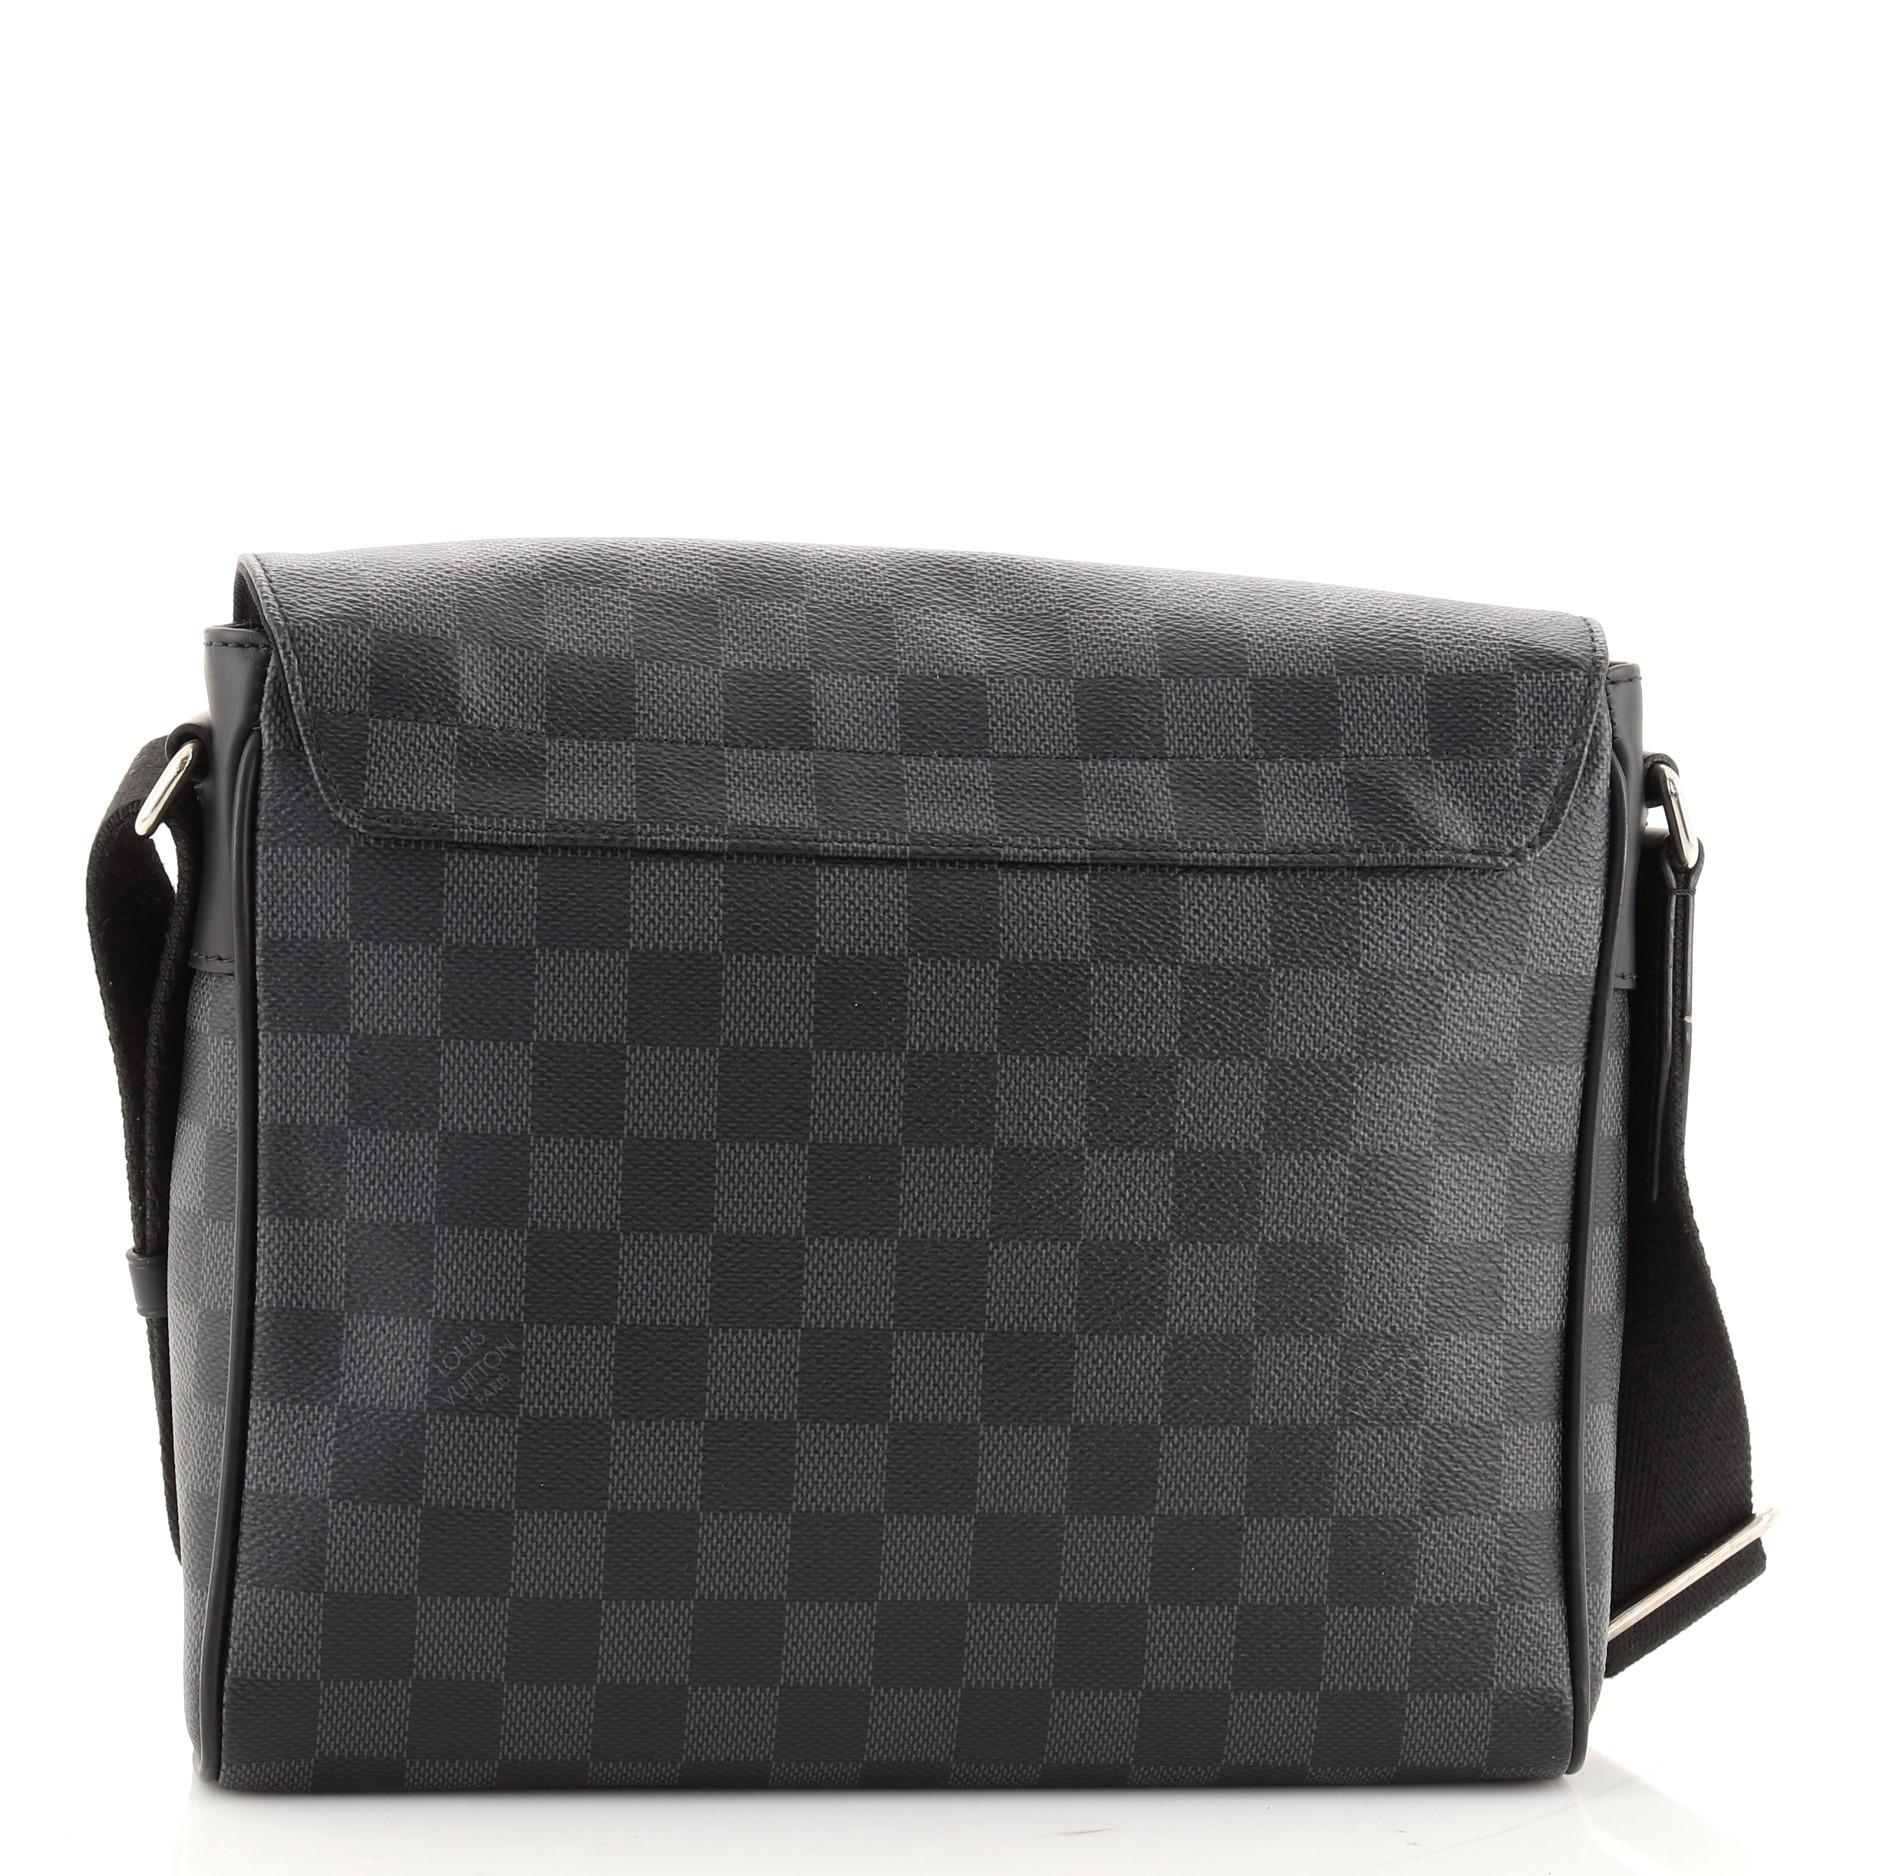 Black Louis Vuitton District NM Messenger Bag Damier Graphite PM